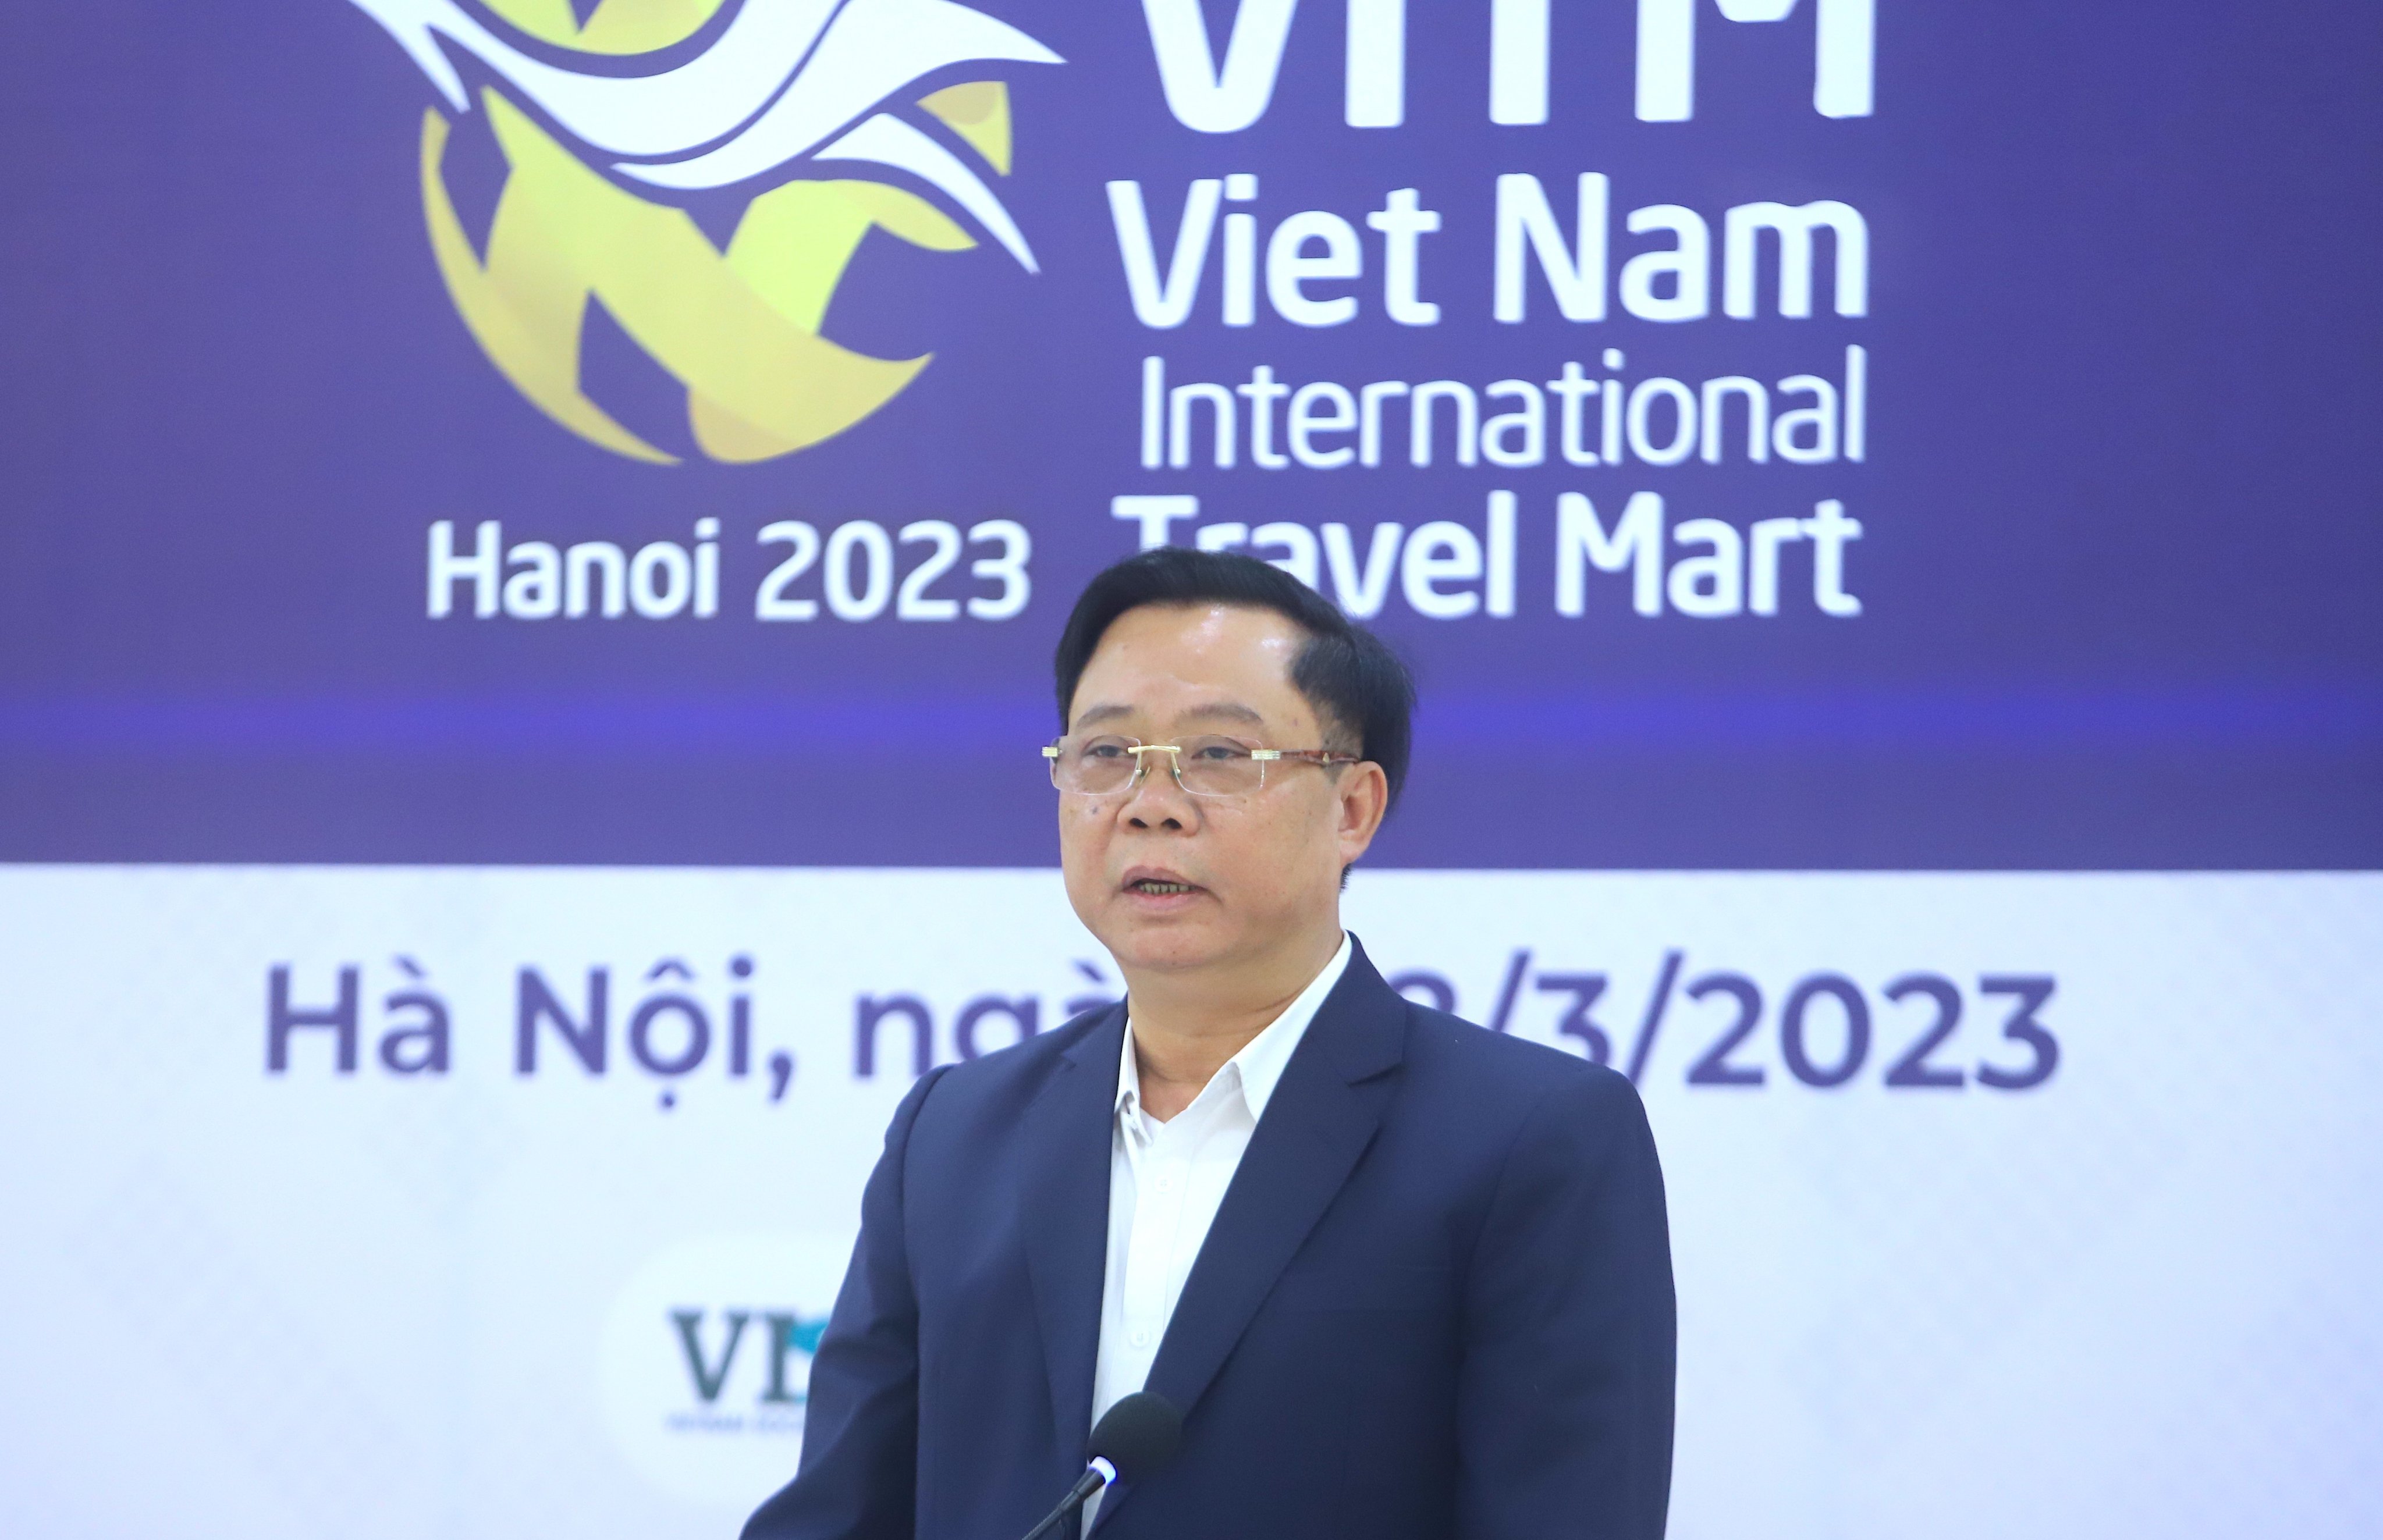 Ông Phạm Văn Thuỷ, Phó Tổng cục trưởng Tổng cục Du lịch chia sẻ tại họp báo giới thiệu về Hội chợ VITM Hà Nội 2023